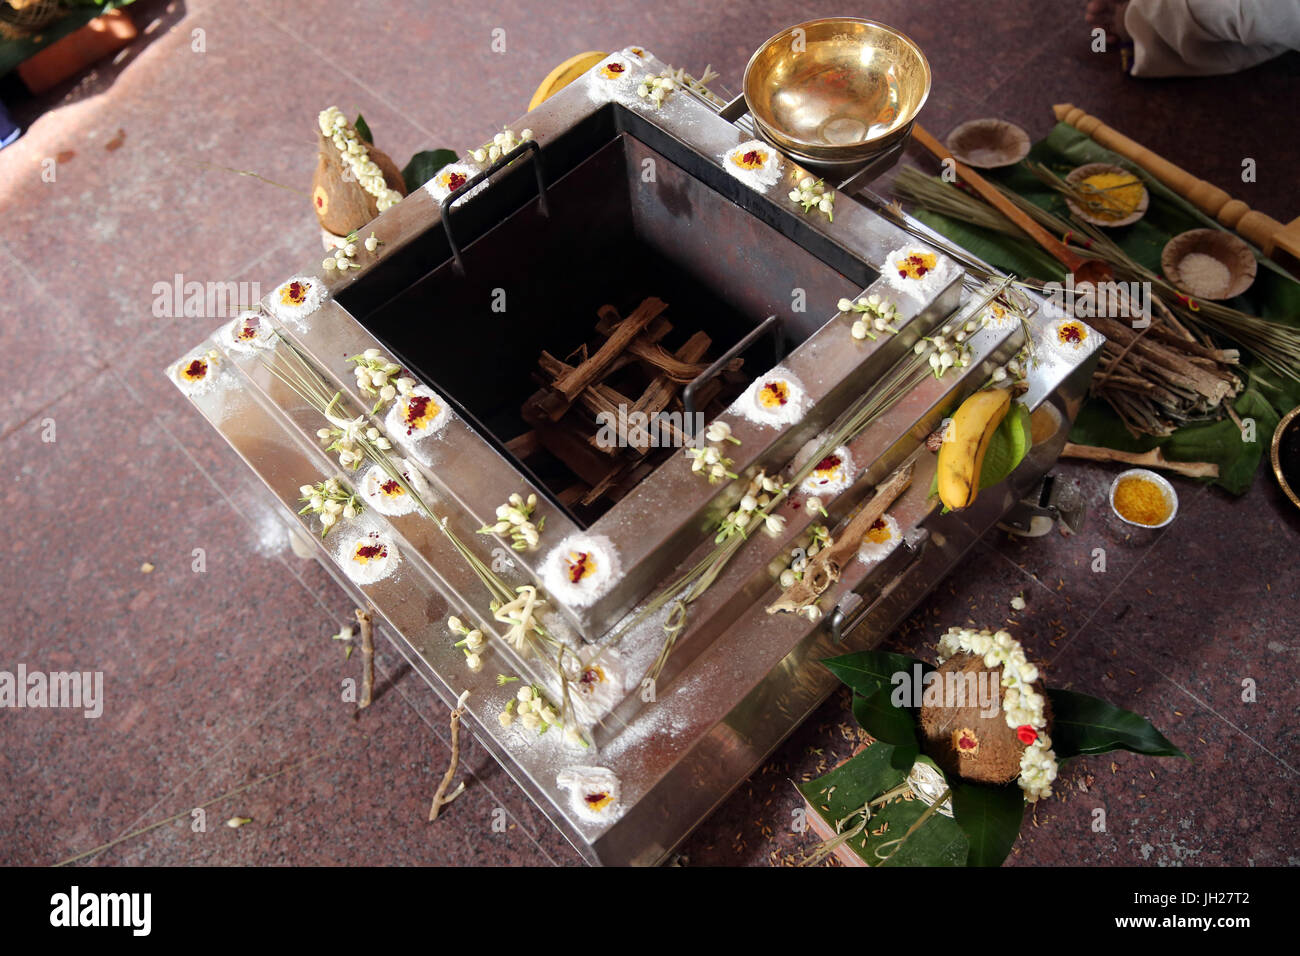 Sri Vadapathira Kaliamman tempio indù. Fuoco vedico cerimonie. Il rituale di yajna. Singapore. Foto Stock